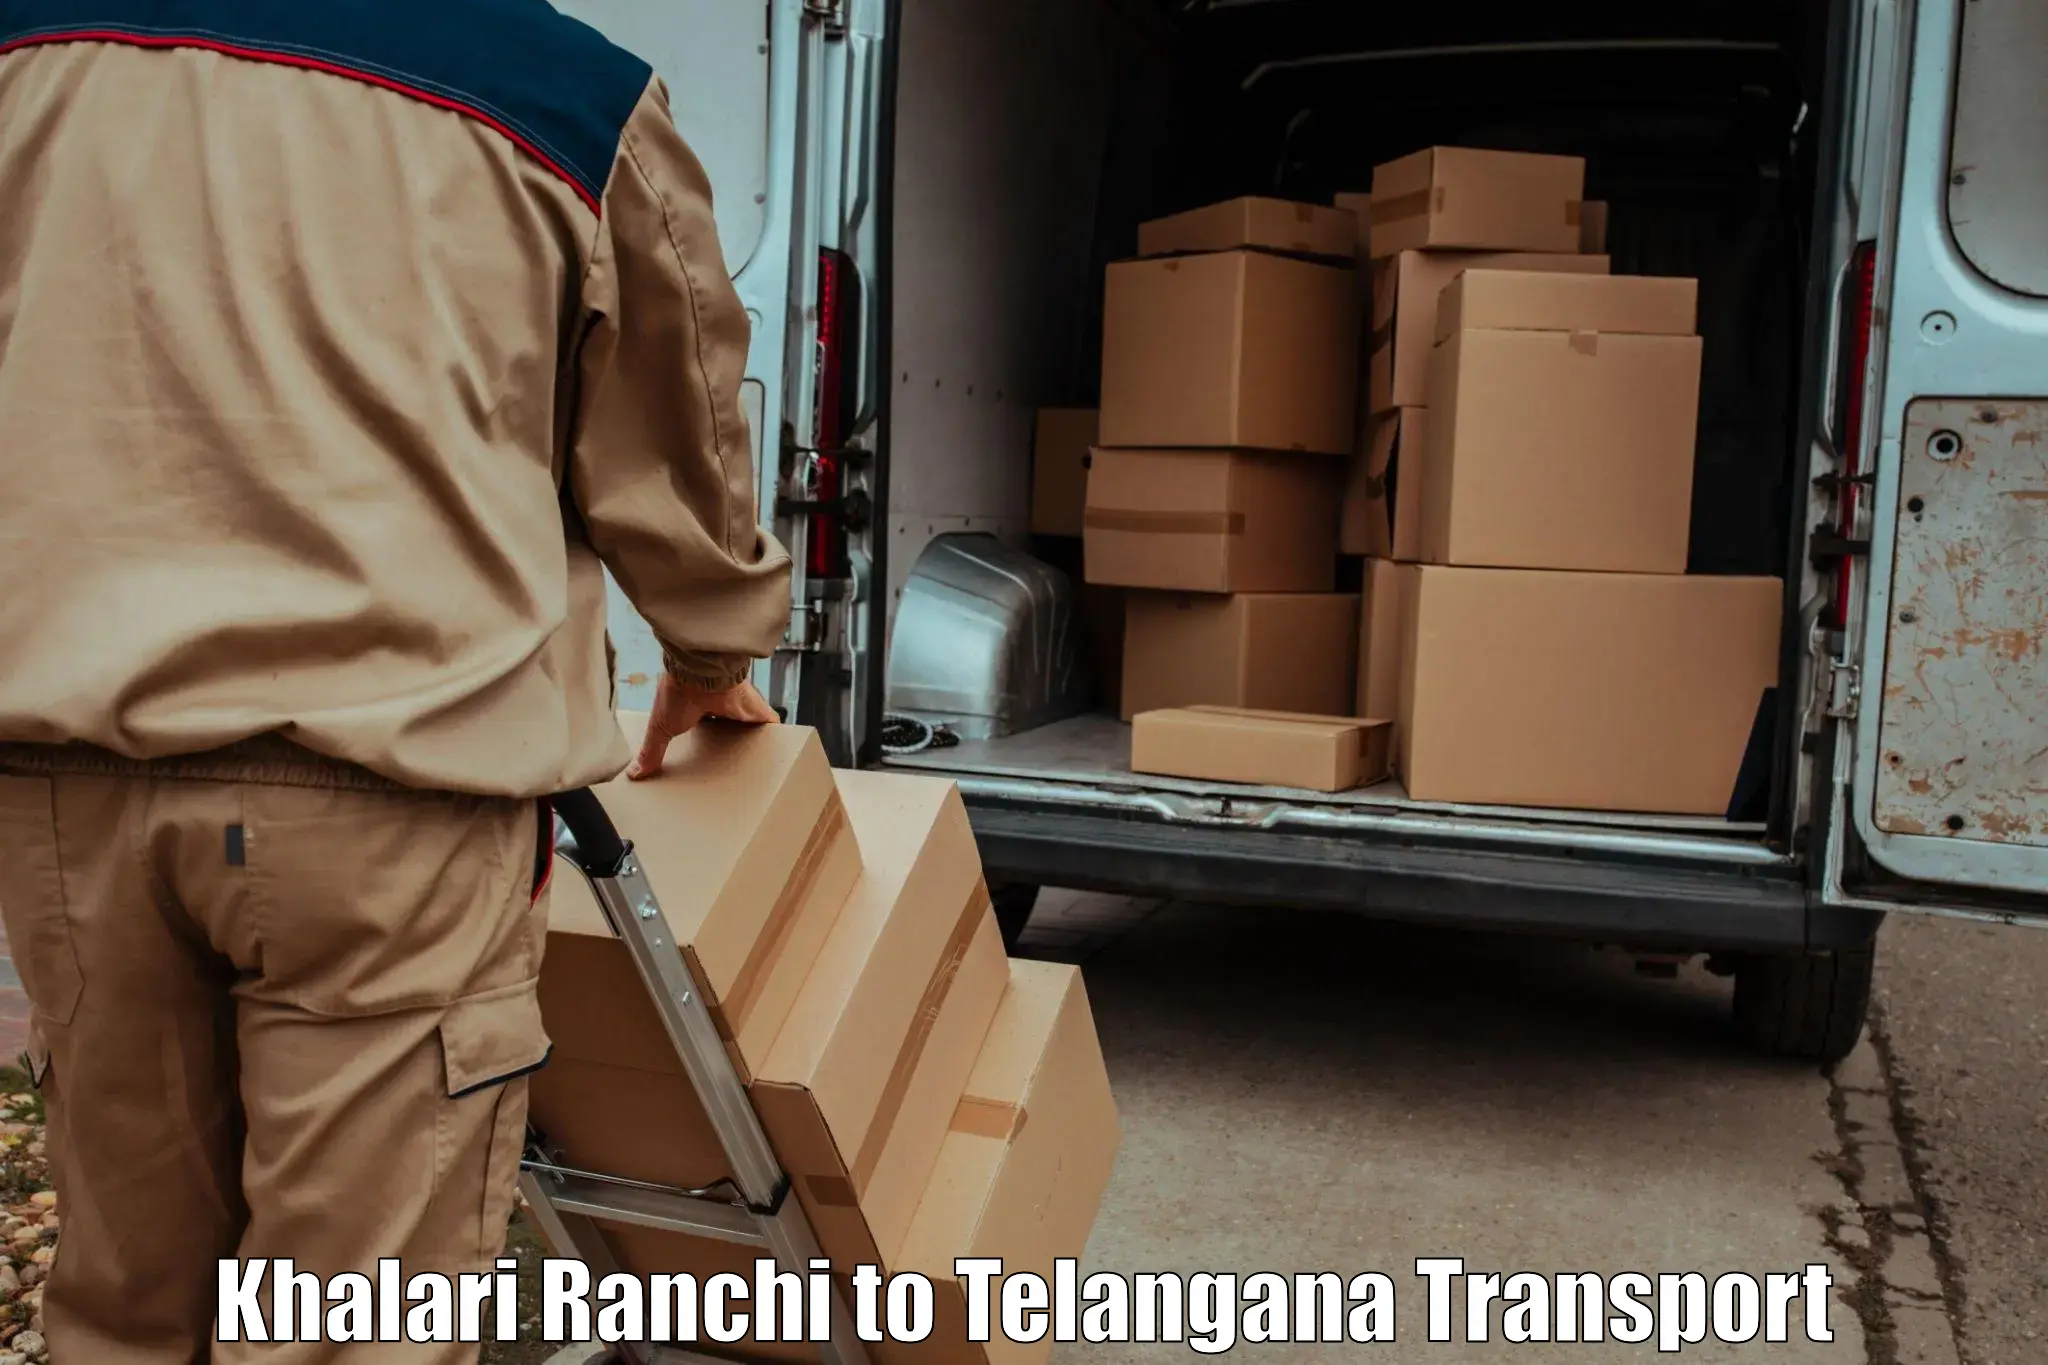 Vehicle parcel service Khalari Ranchi to Osmania University Hyderabad